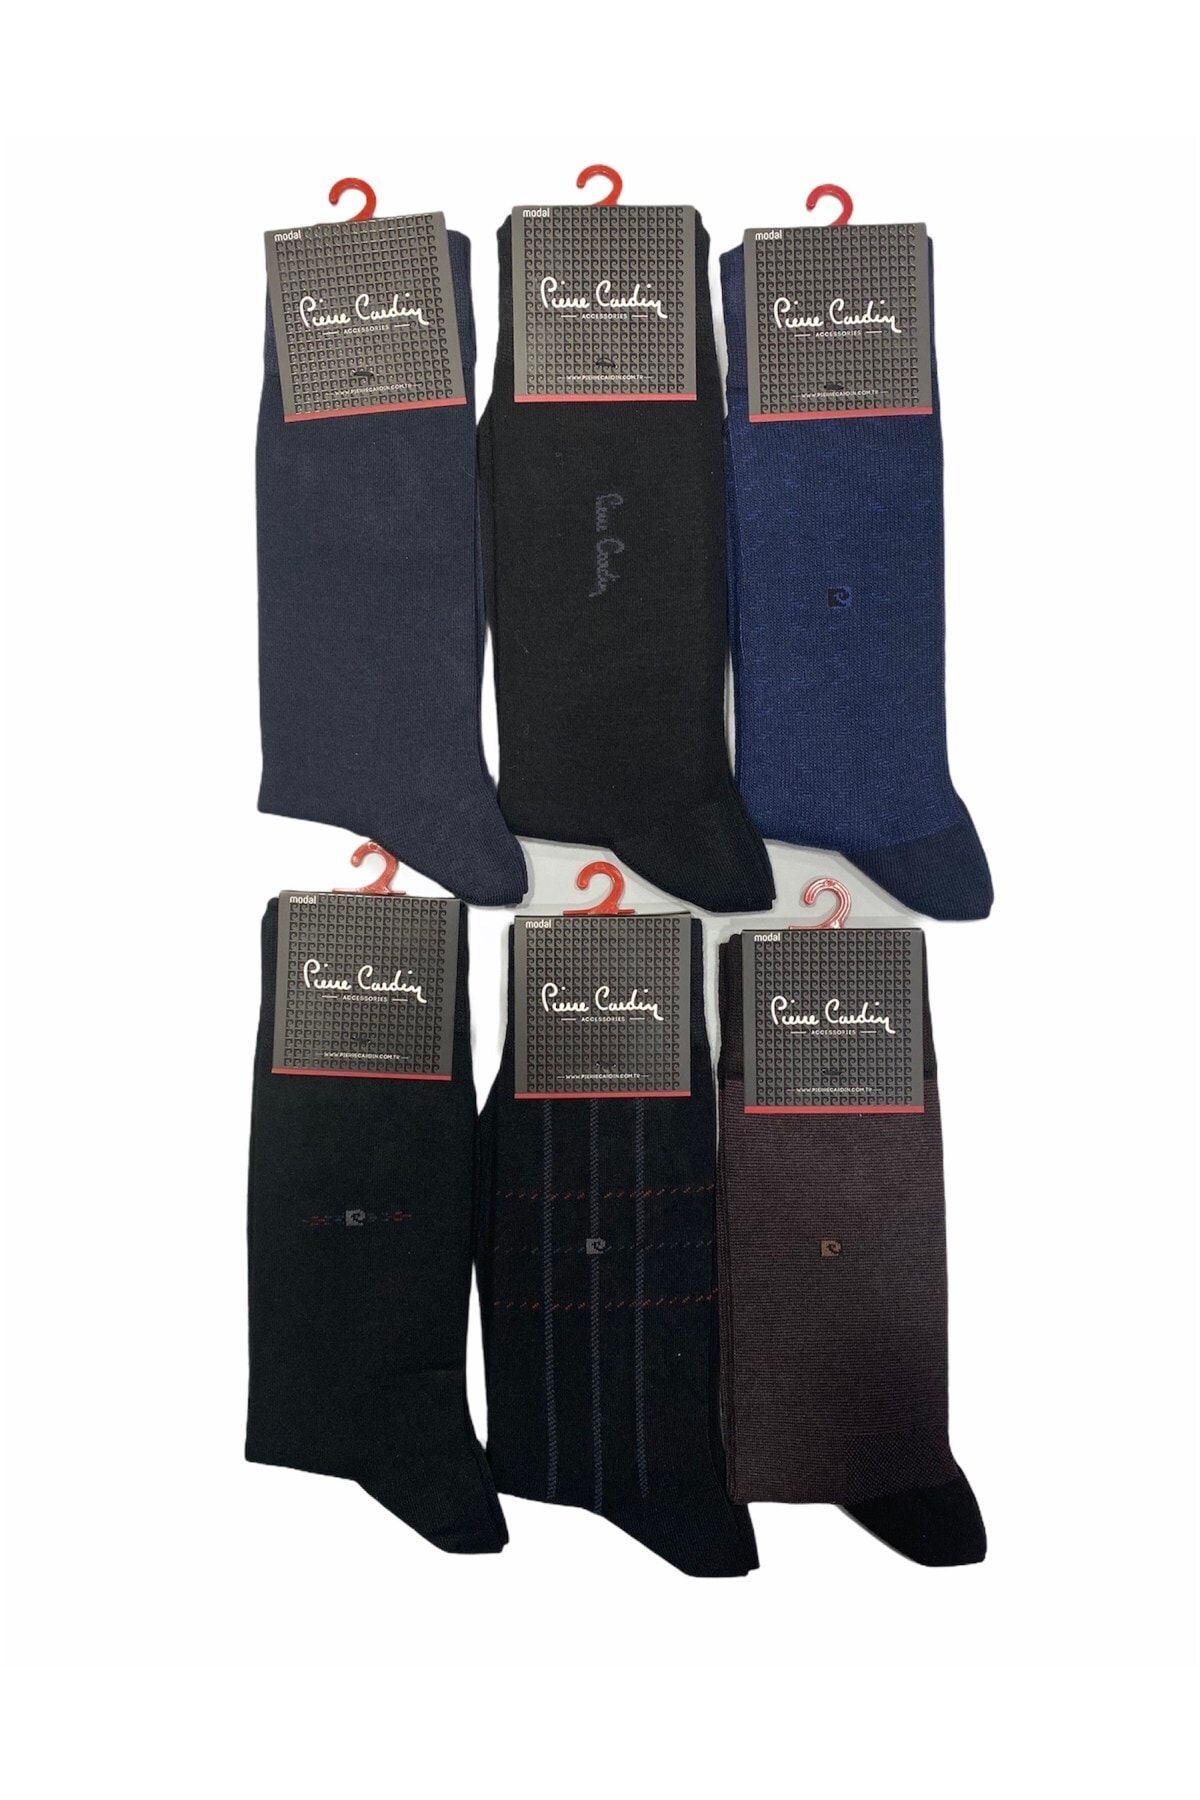 Pierre Cardin Erkek Paket Modal Pamuk Çorap 6lı